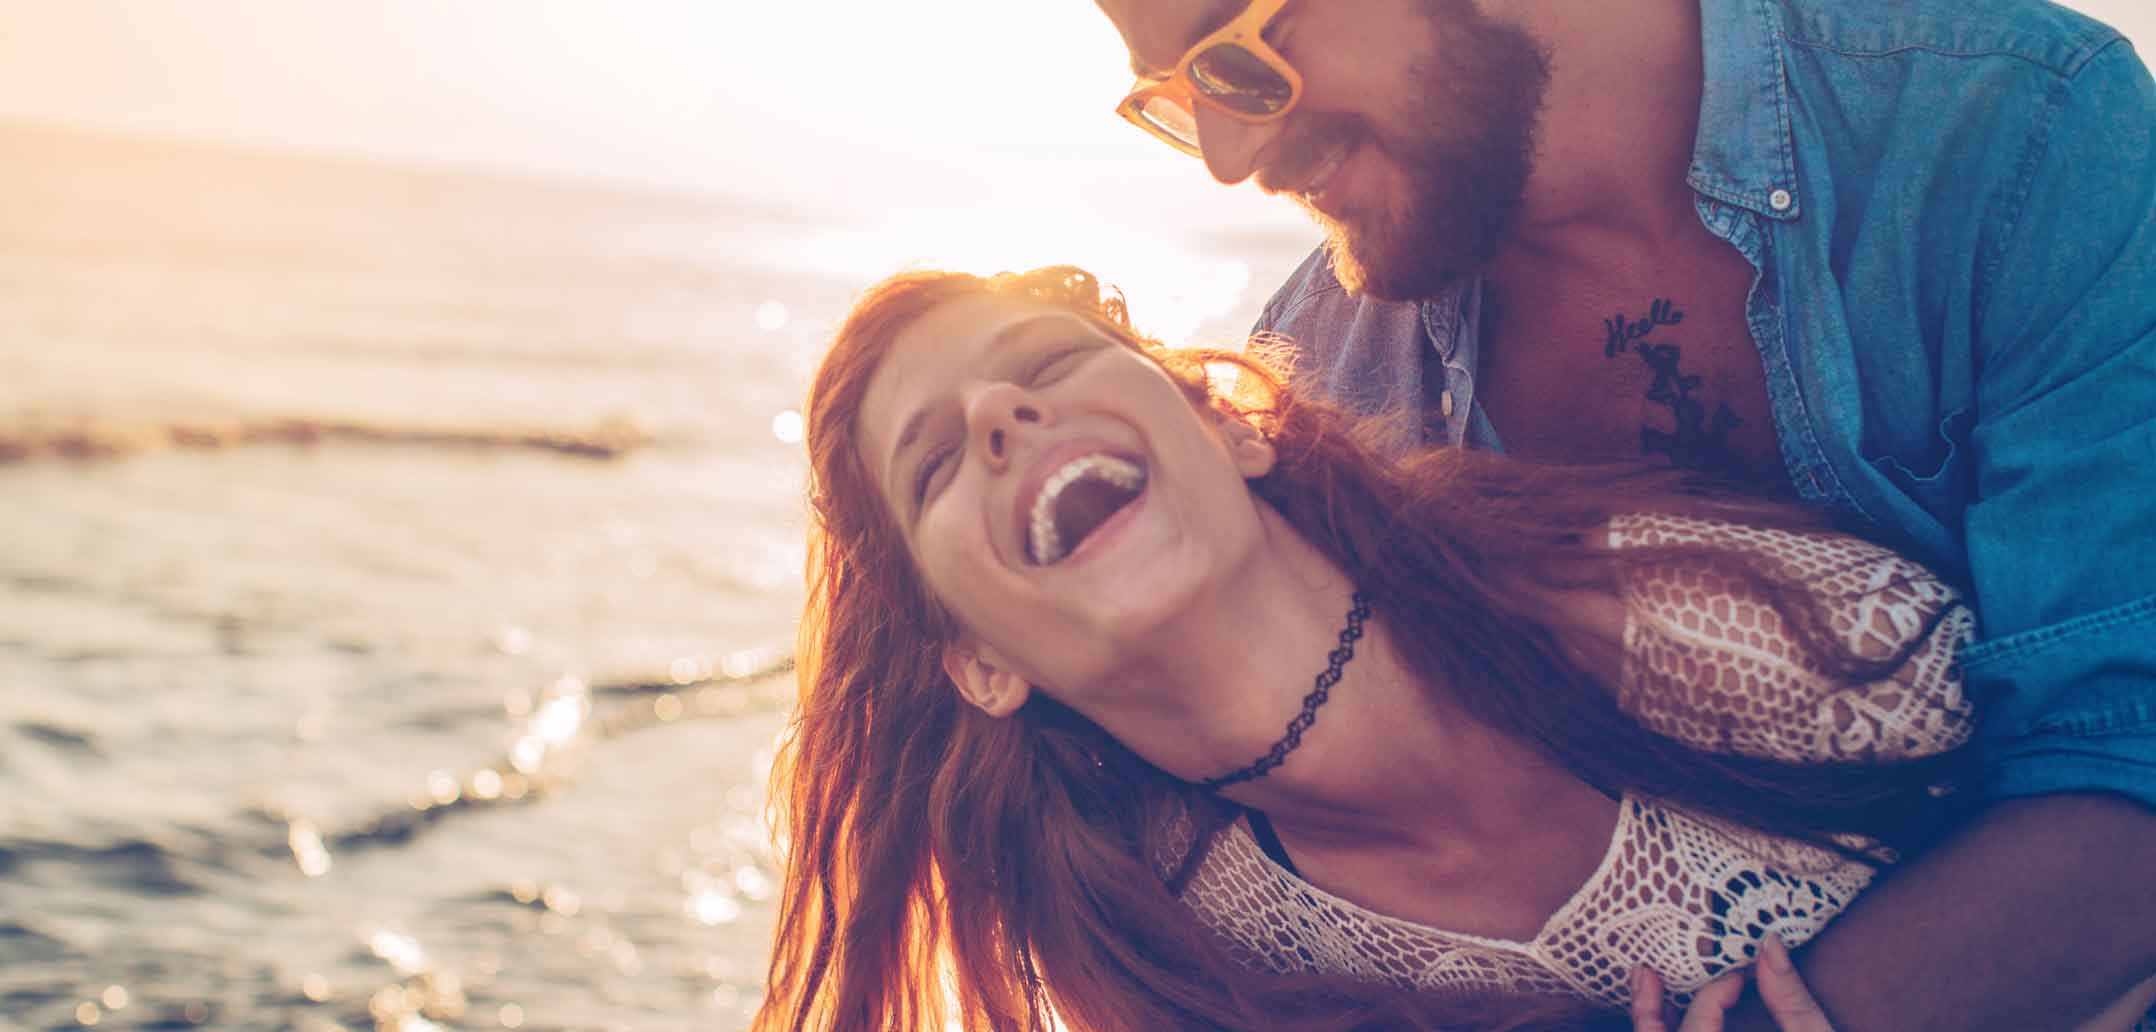 Glückliche Paare leben statistisch länger als Singles